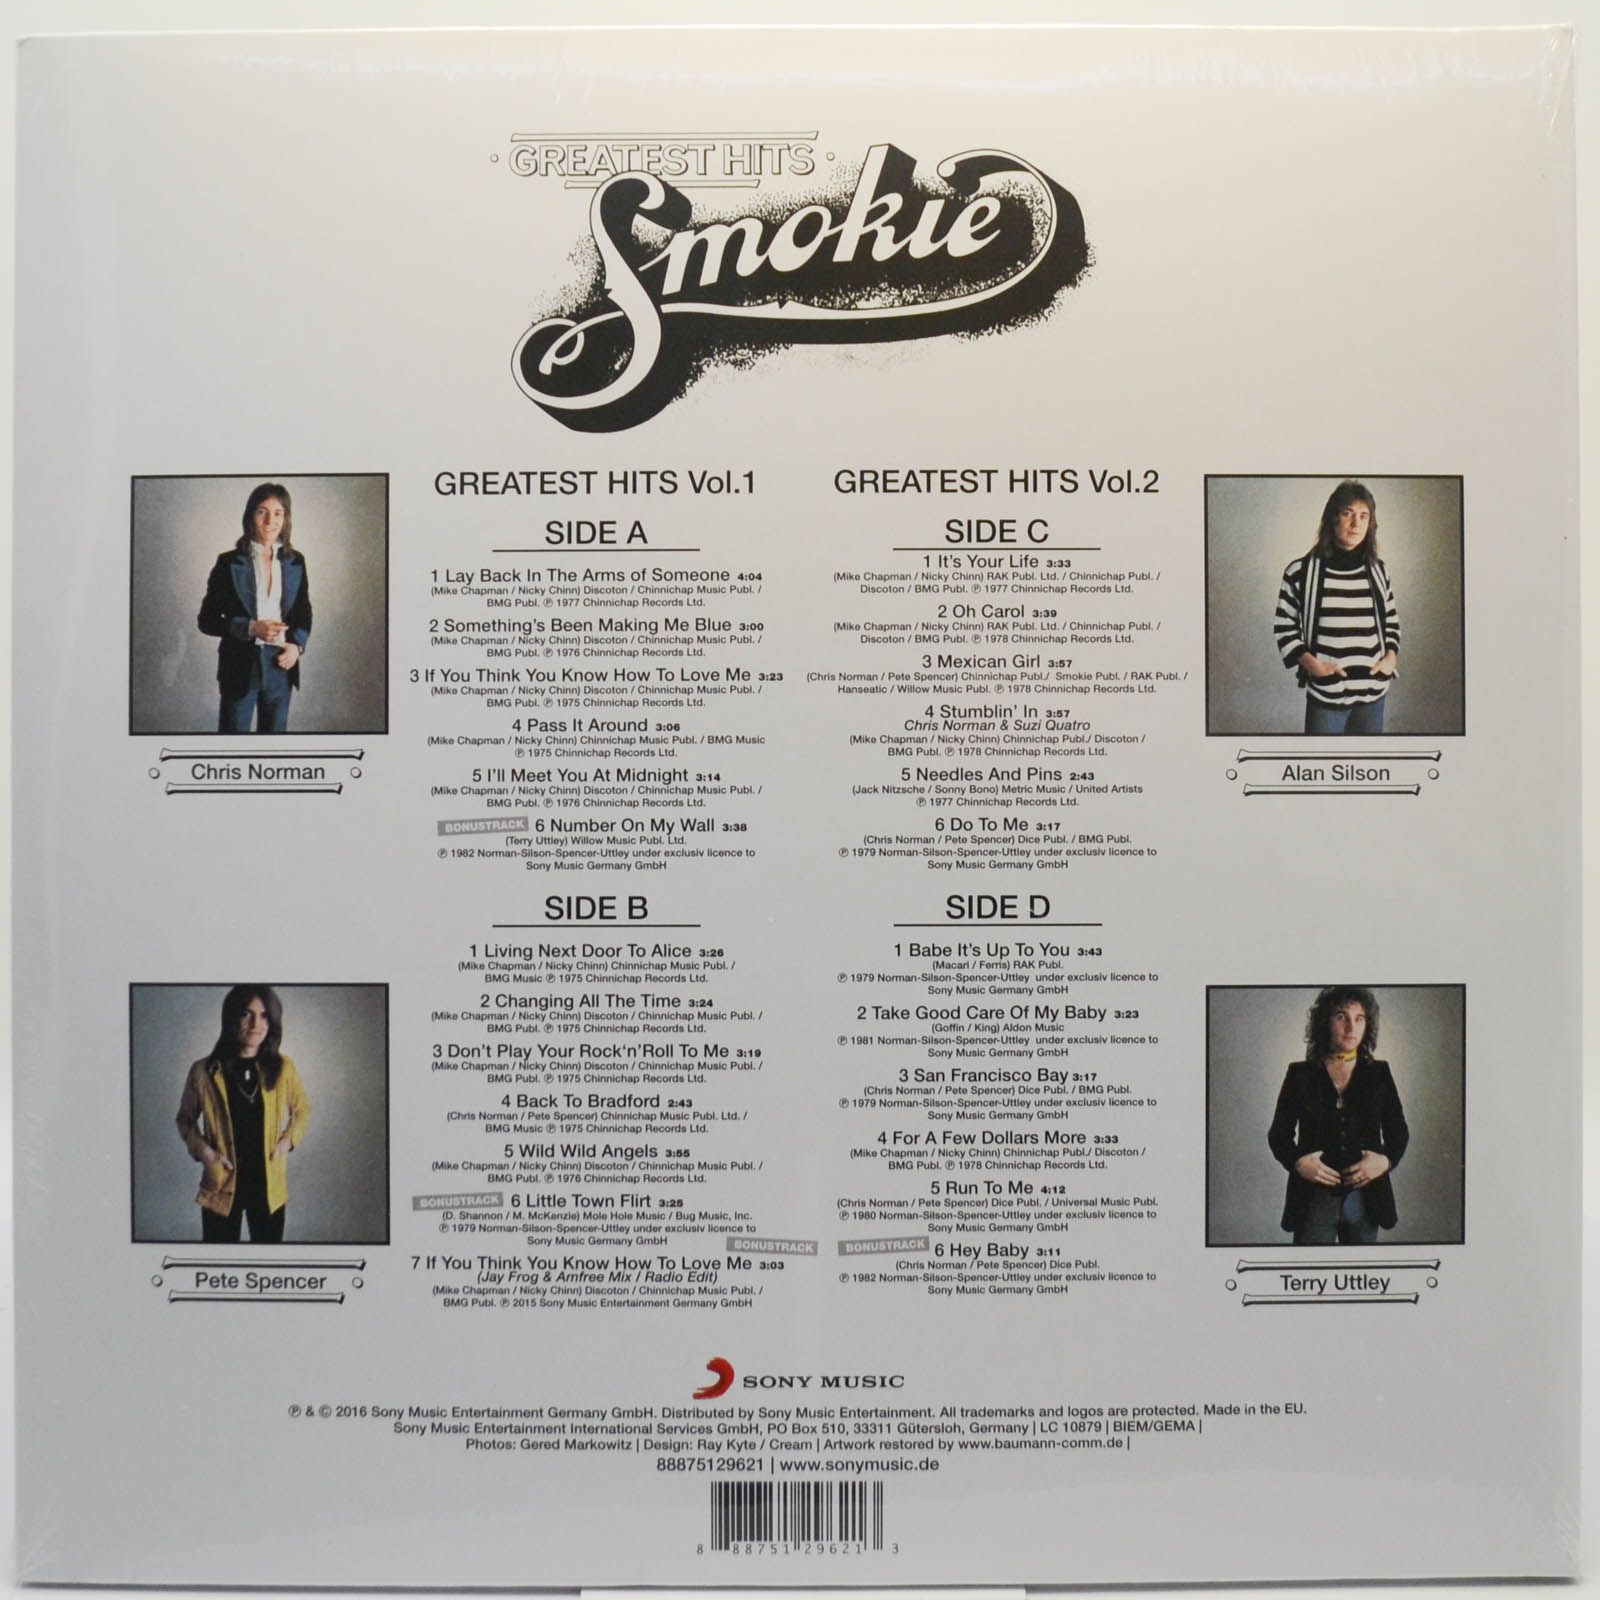 Smokie — Greatest Hits Vol.1 & Vol.2 (2LP), 1977